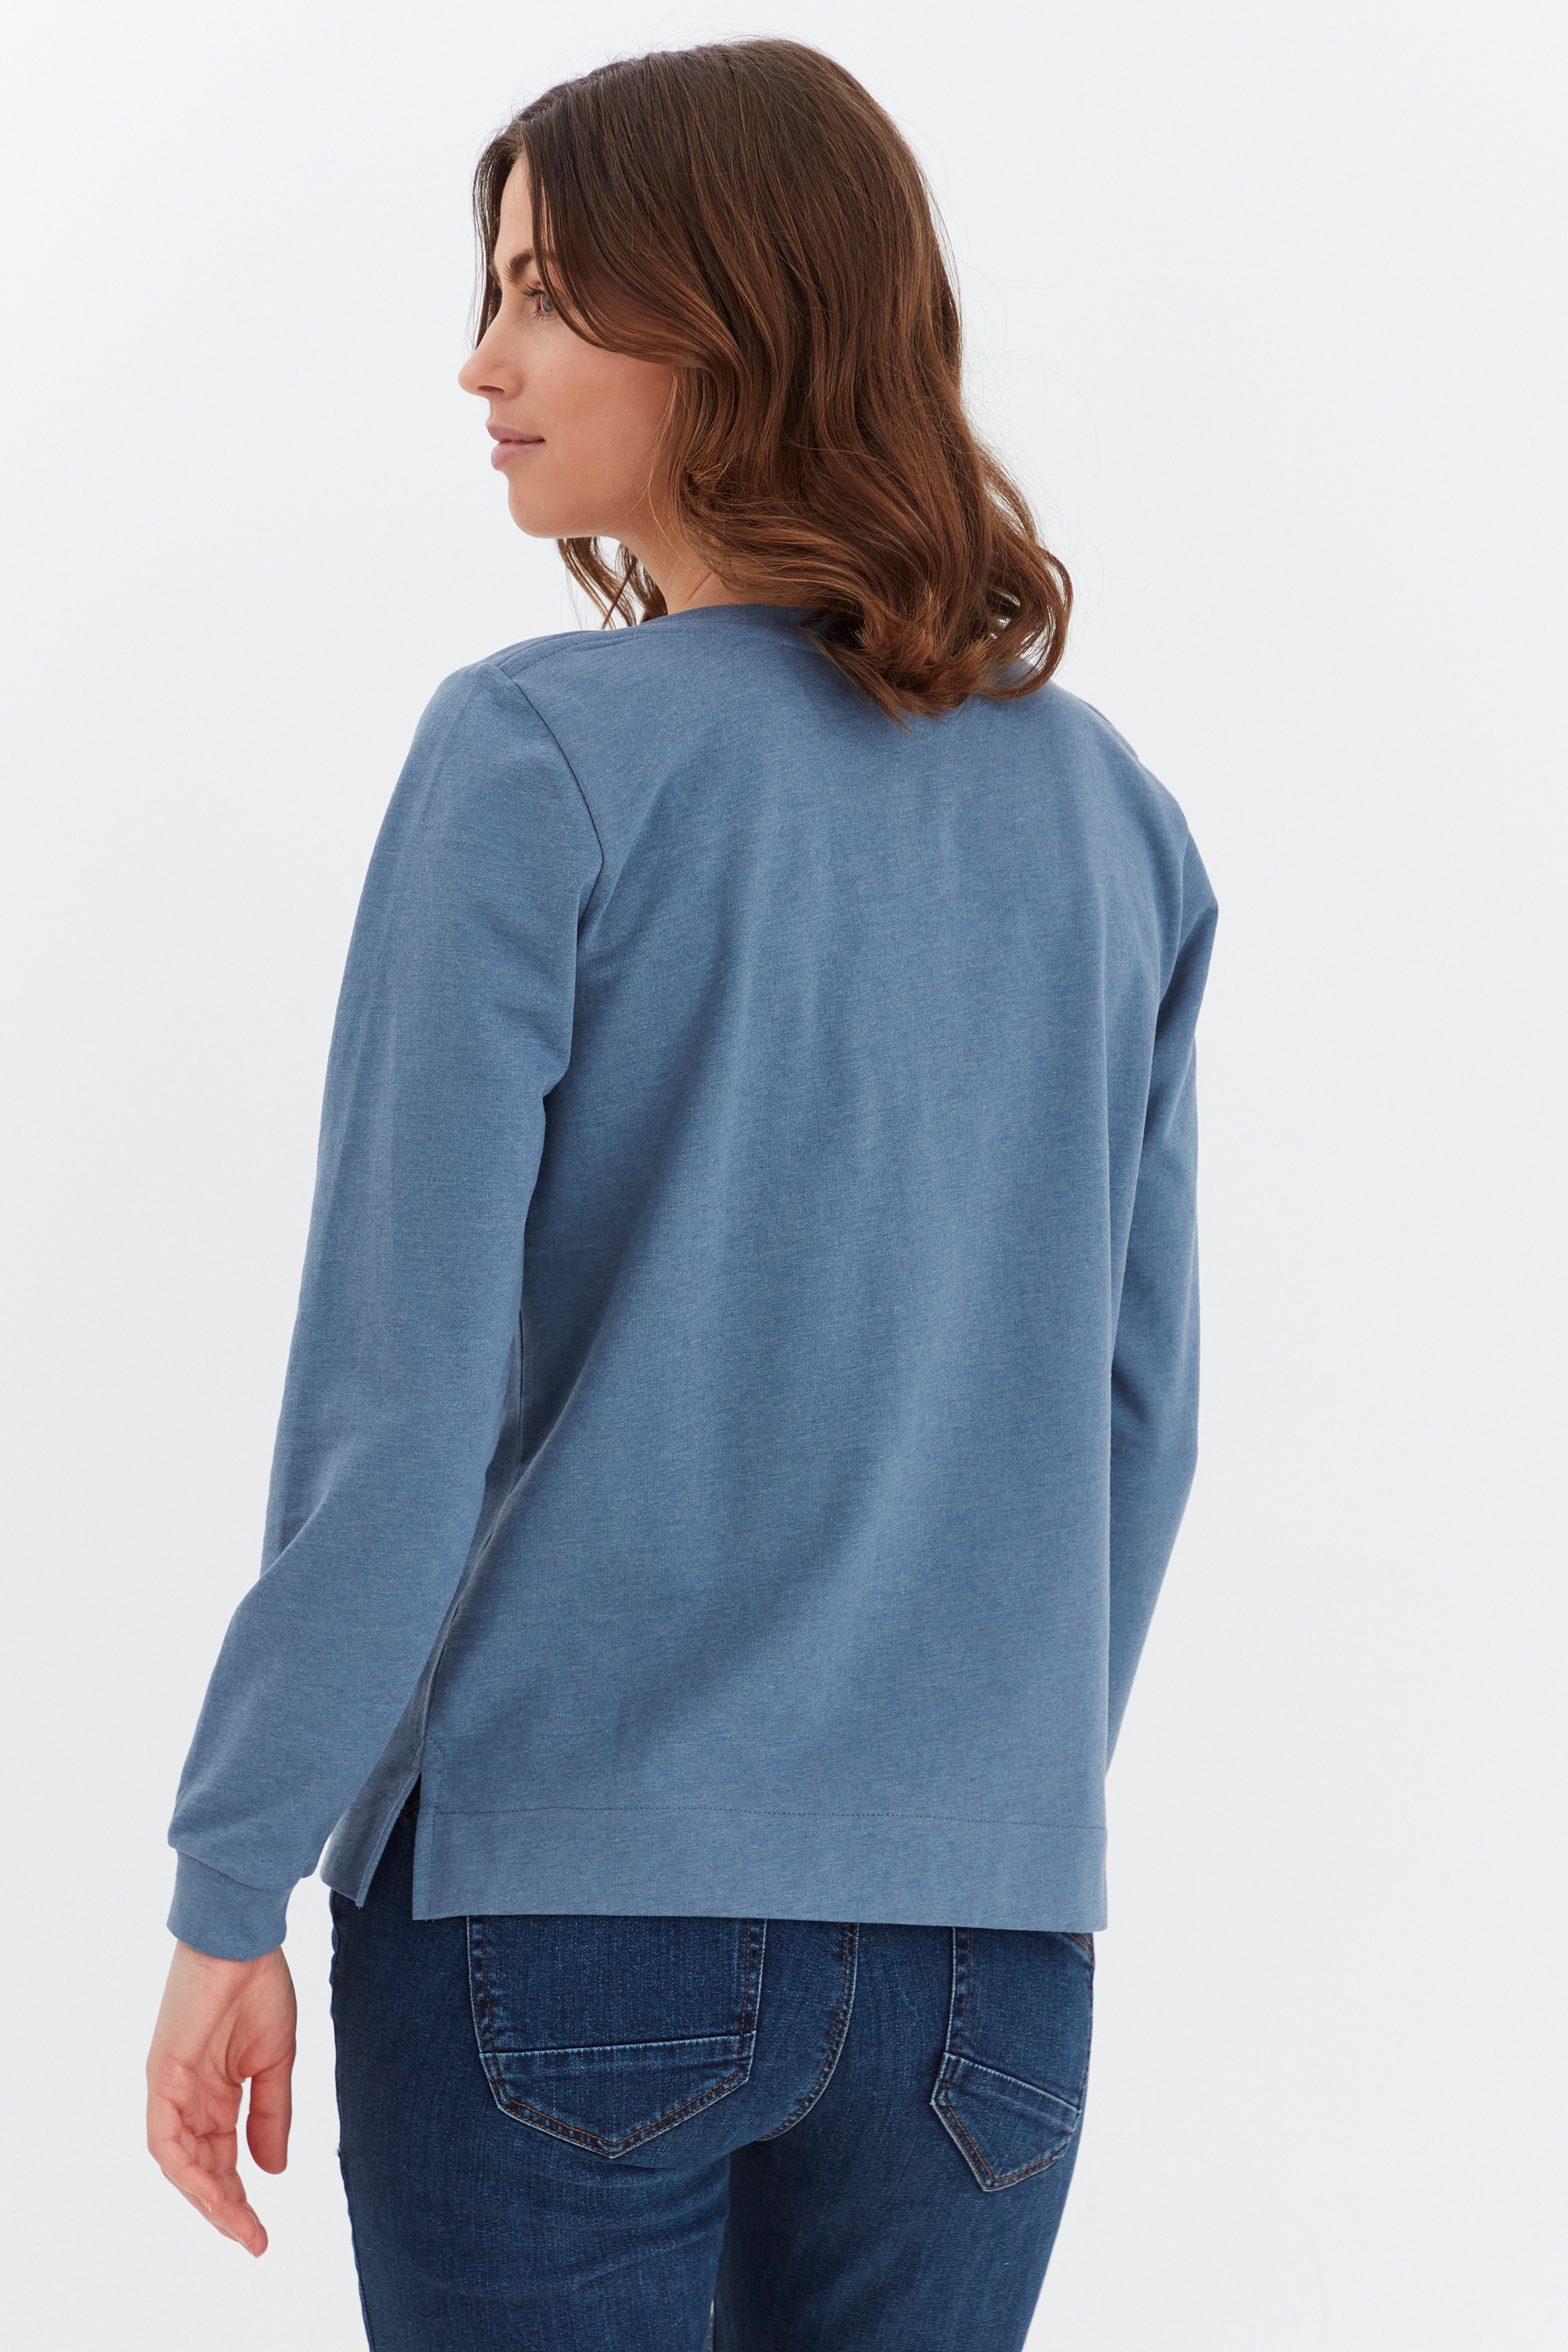 Fransa Sweatshirt in Blau 